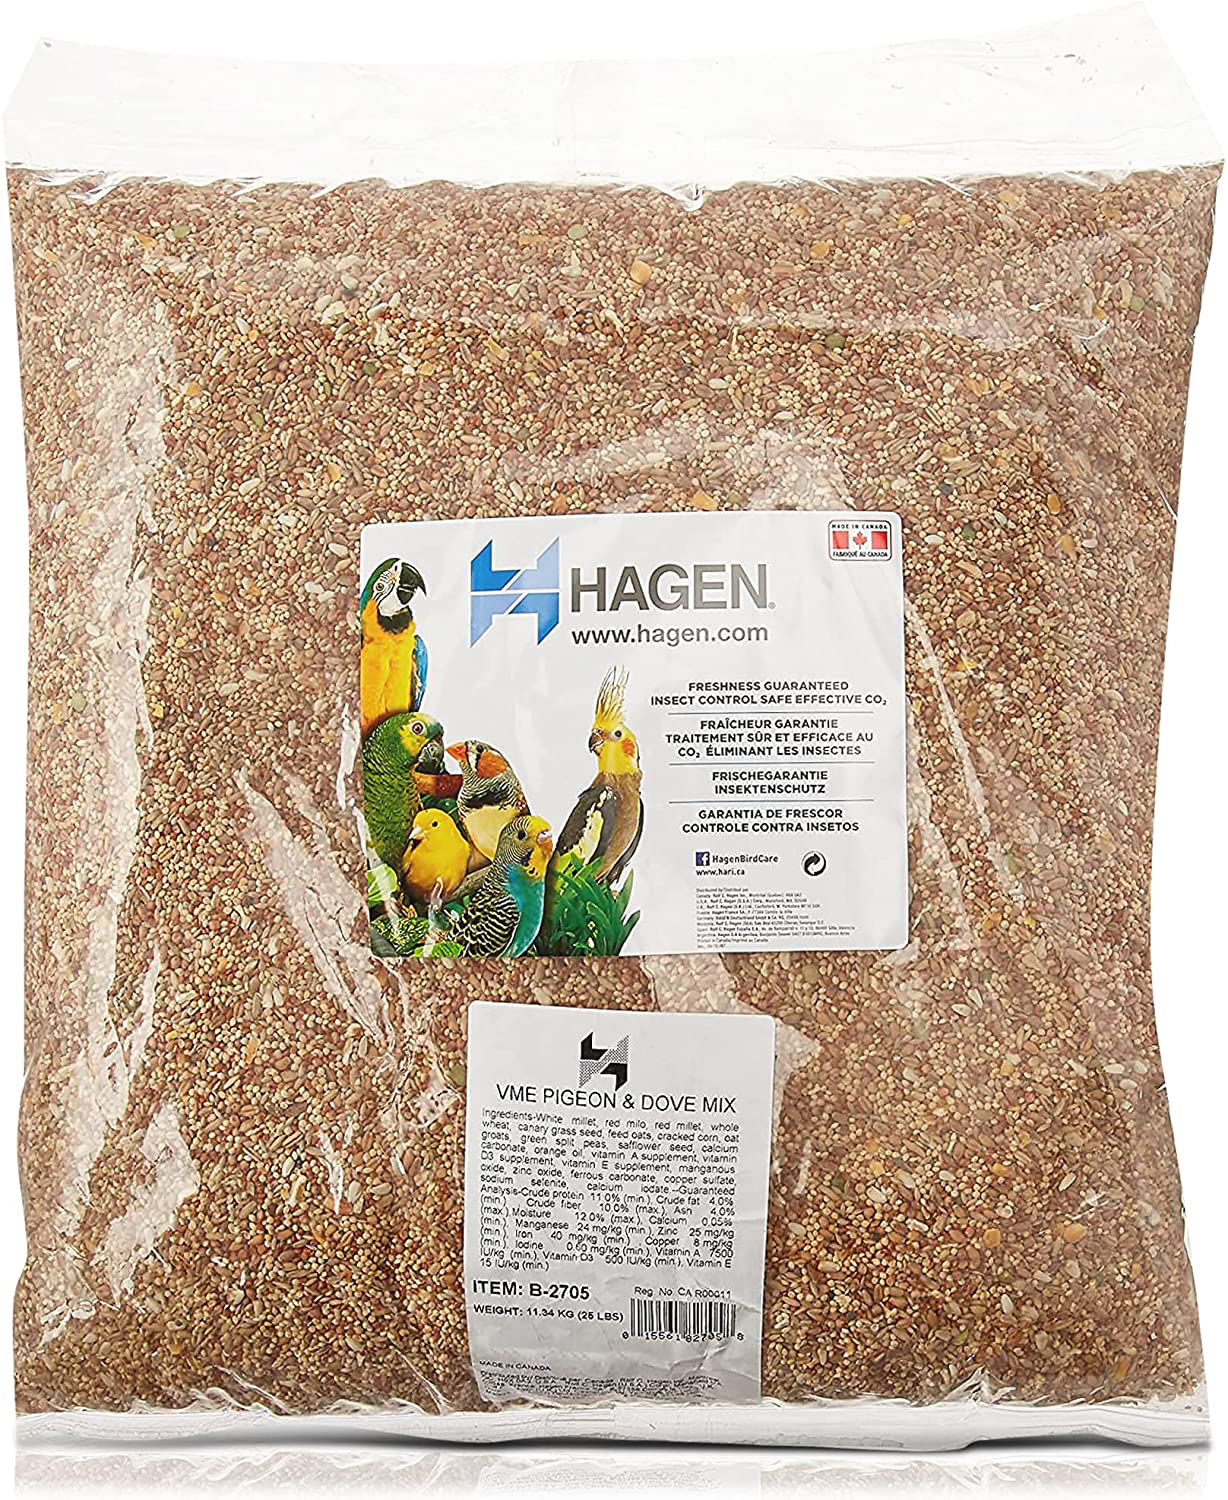 Hagen Pigeon & Dove Seed, Nutritionally Complete Bird Food Animals & Pet Supplies > Pet Supplies > Bird Supplies > Bird Food Hagen 25 Pound (Pack of 1)  